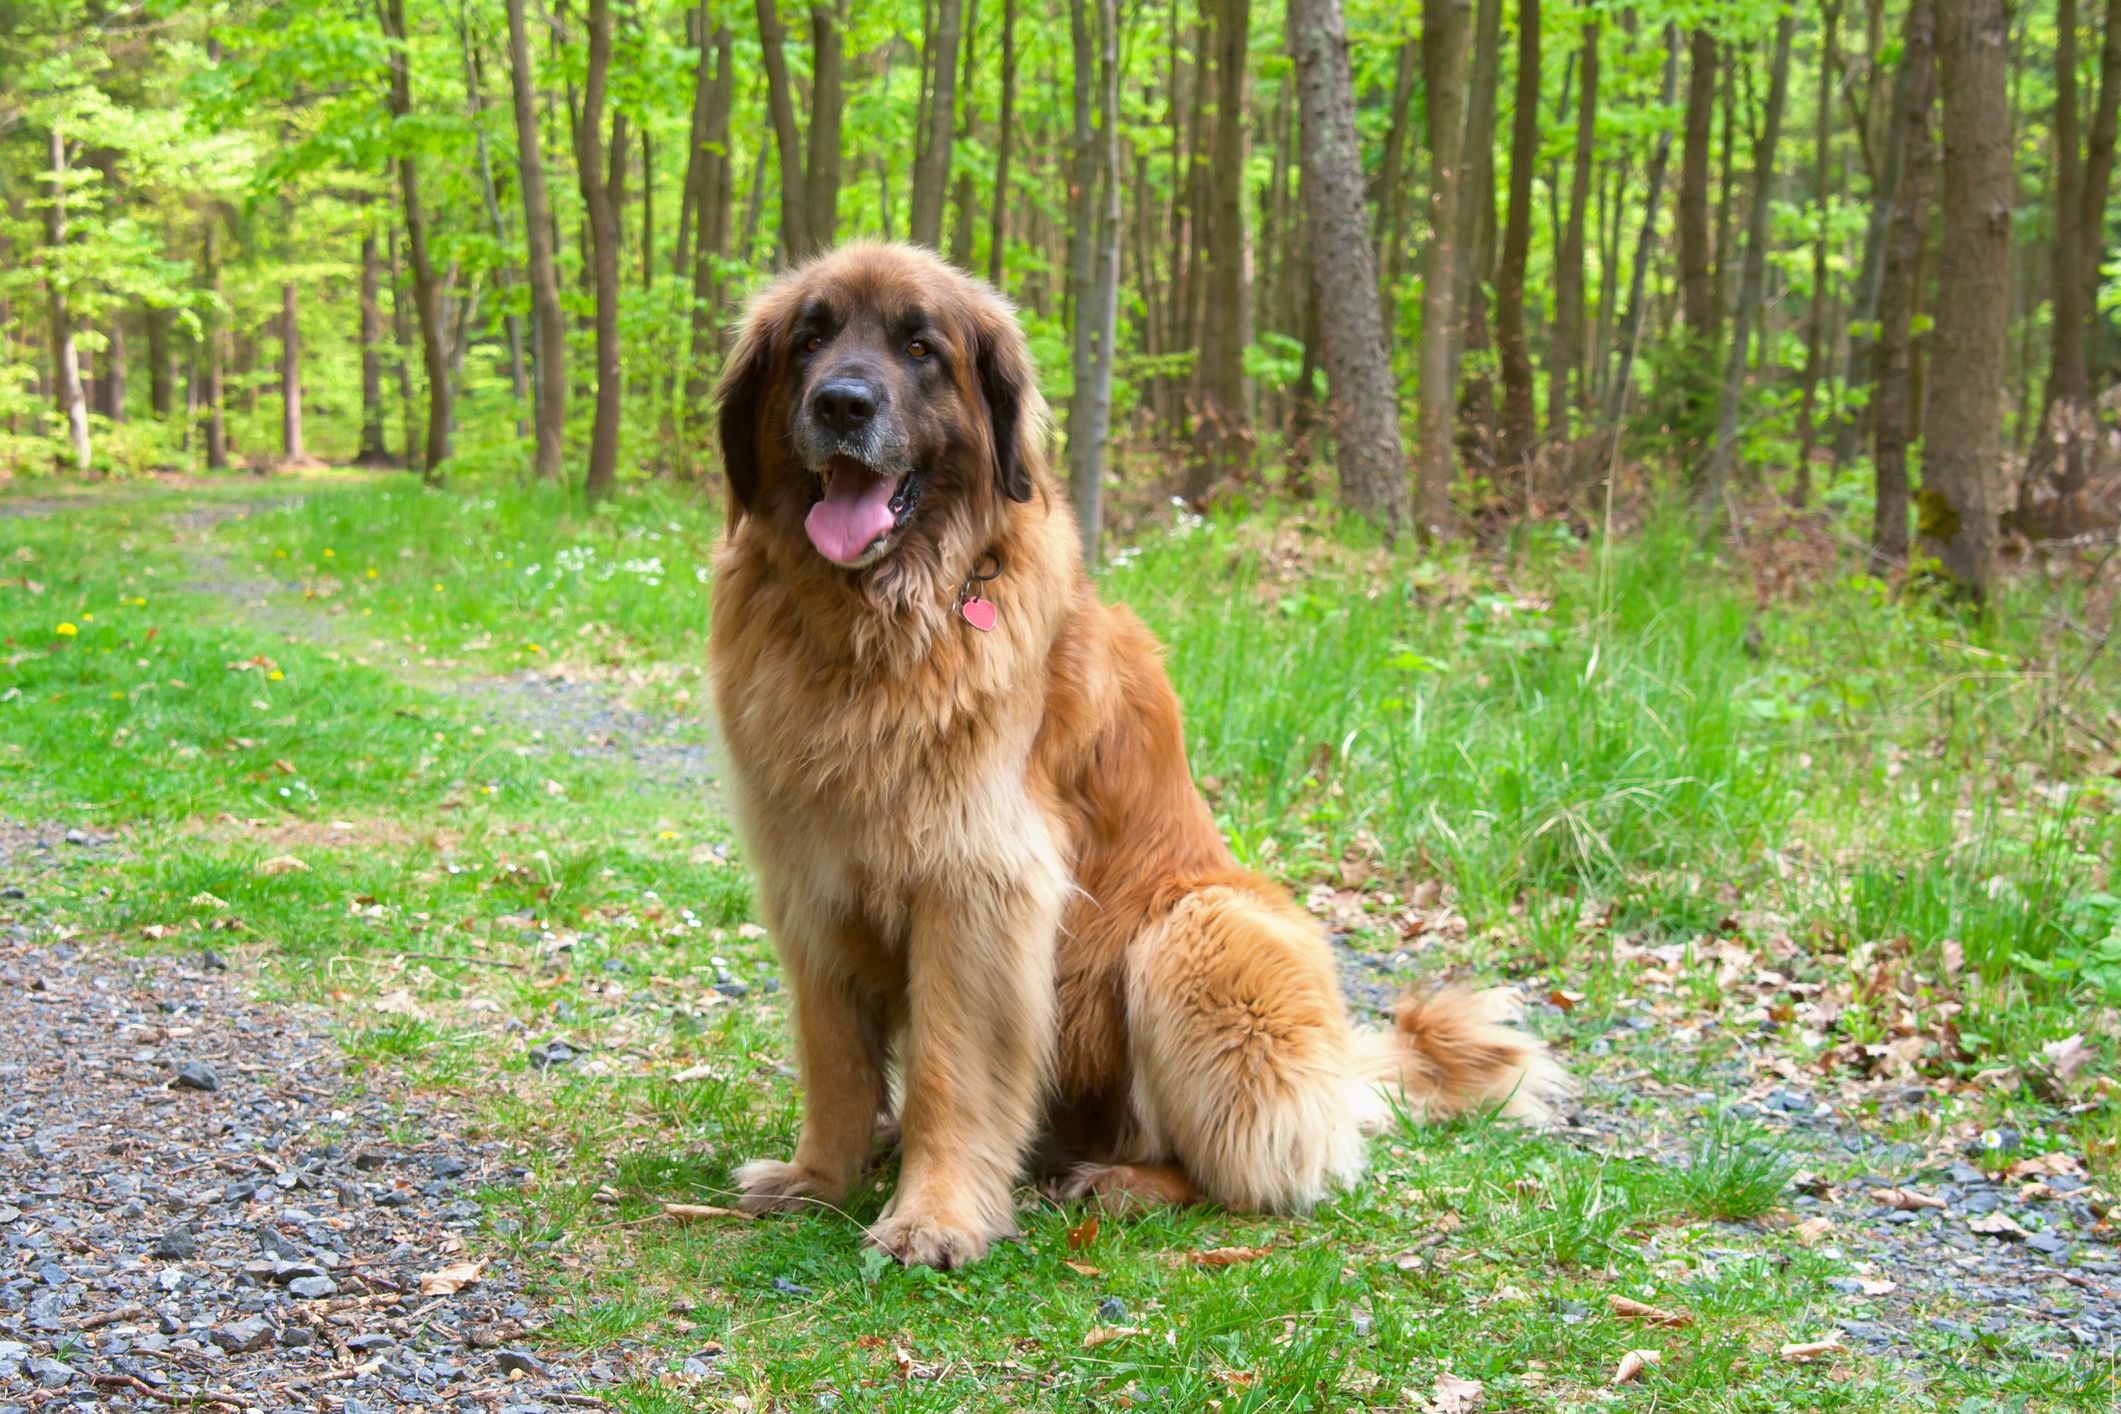 Big dog breeds: 15 of the biggest dog breeds